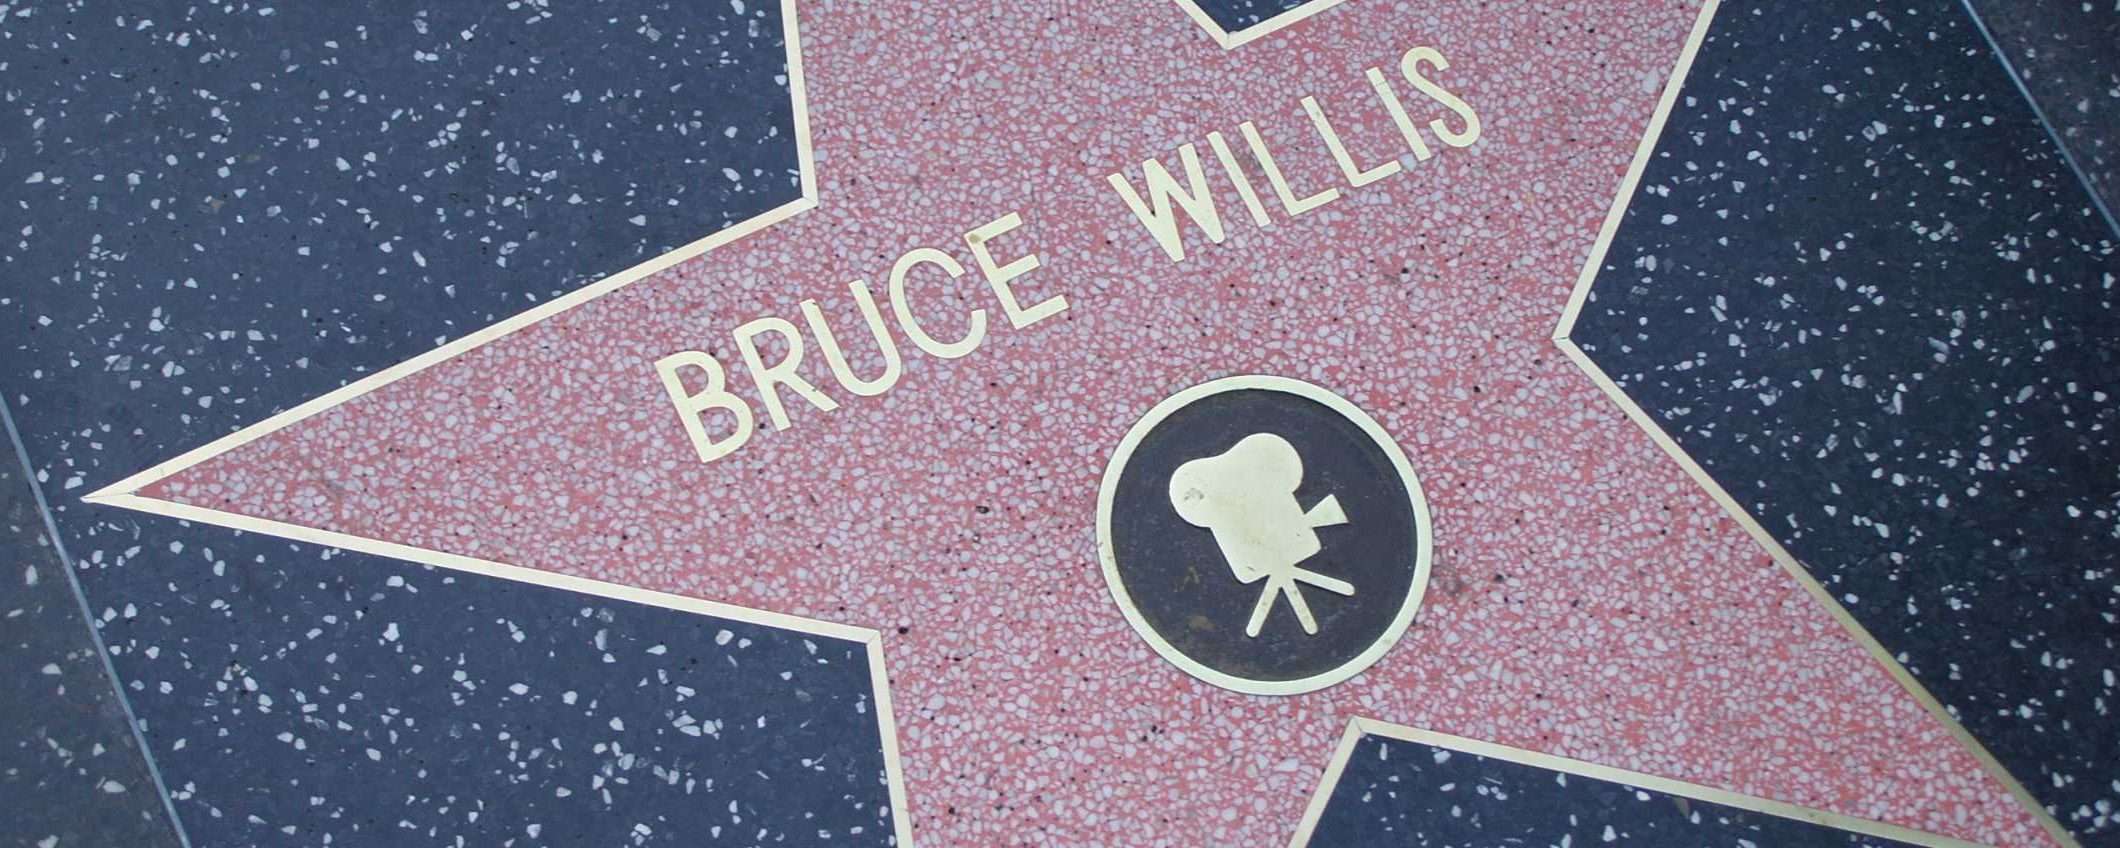 Bruce Willis apparirà nei film in versione digitale?